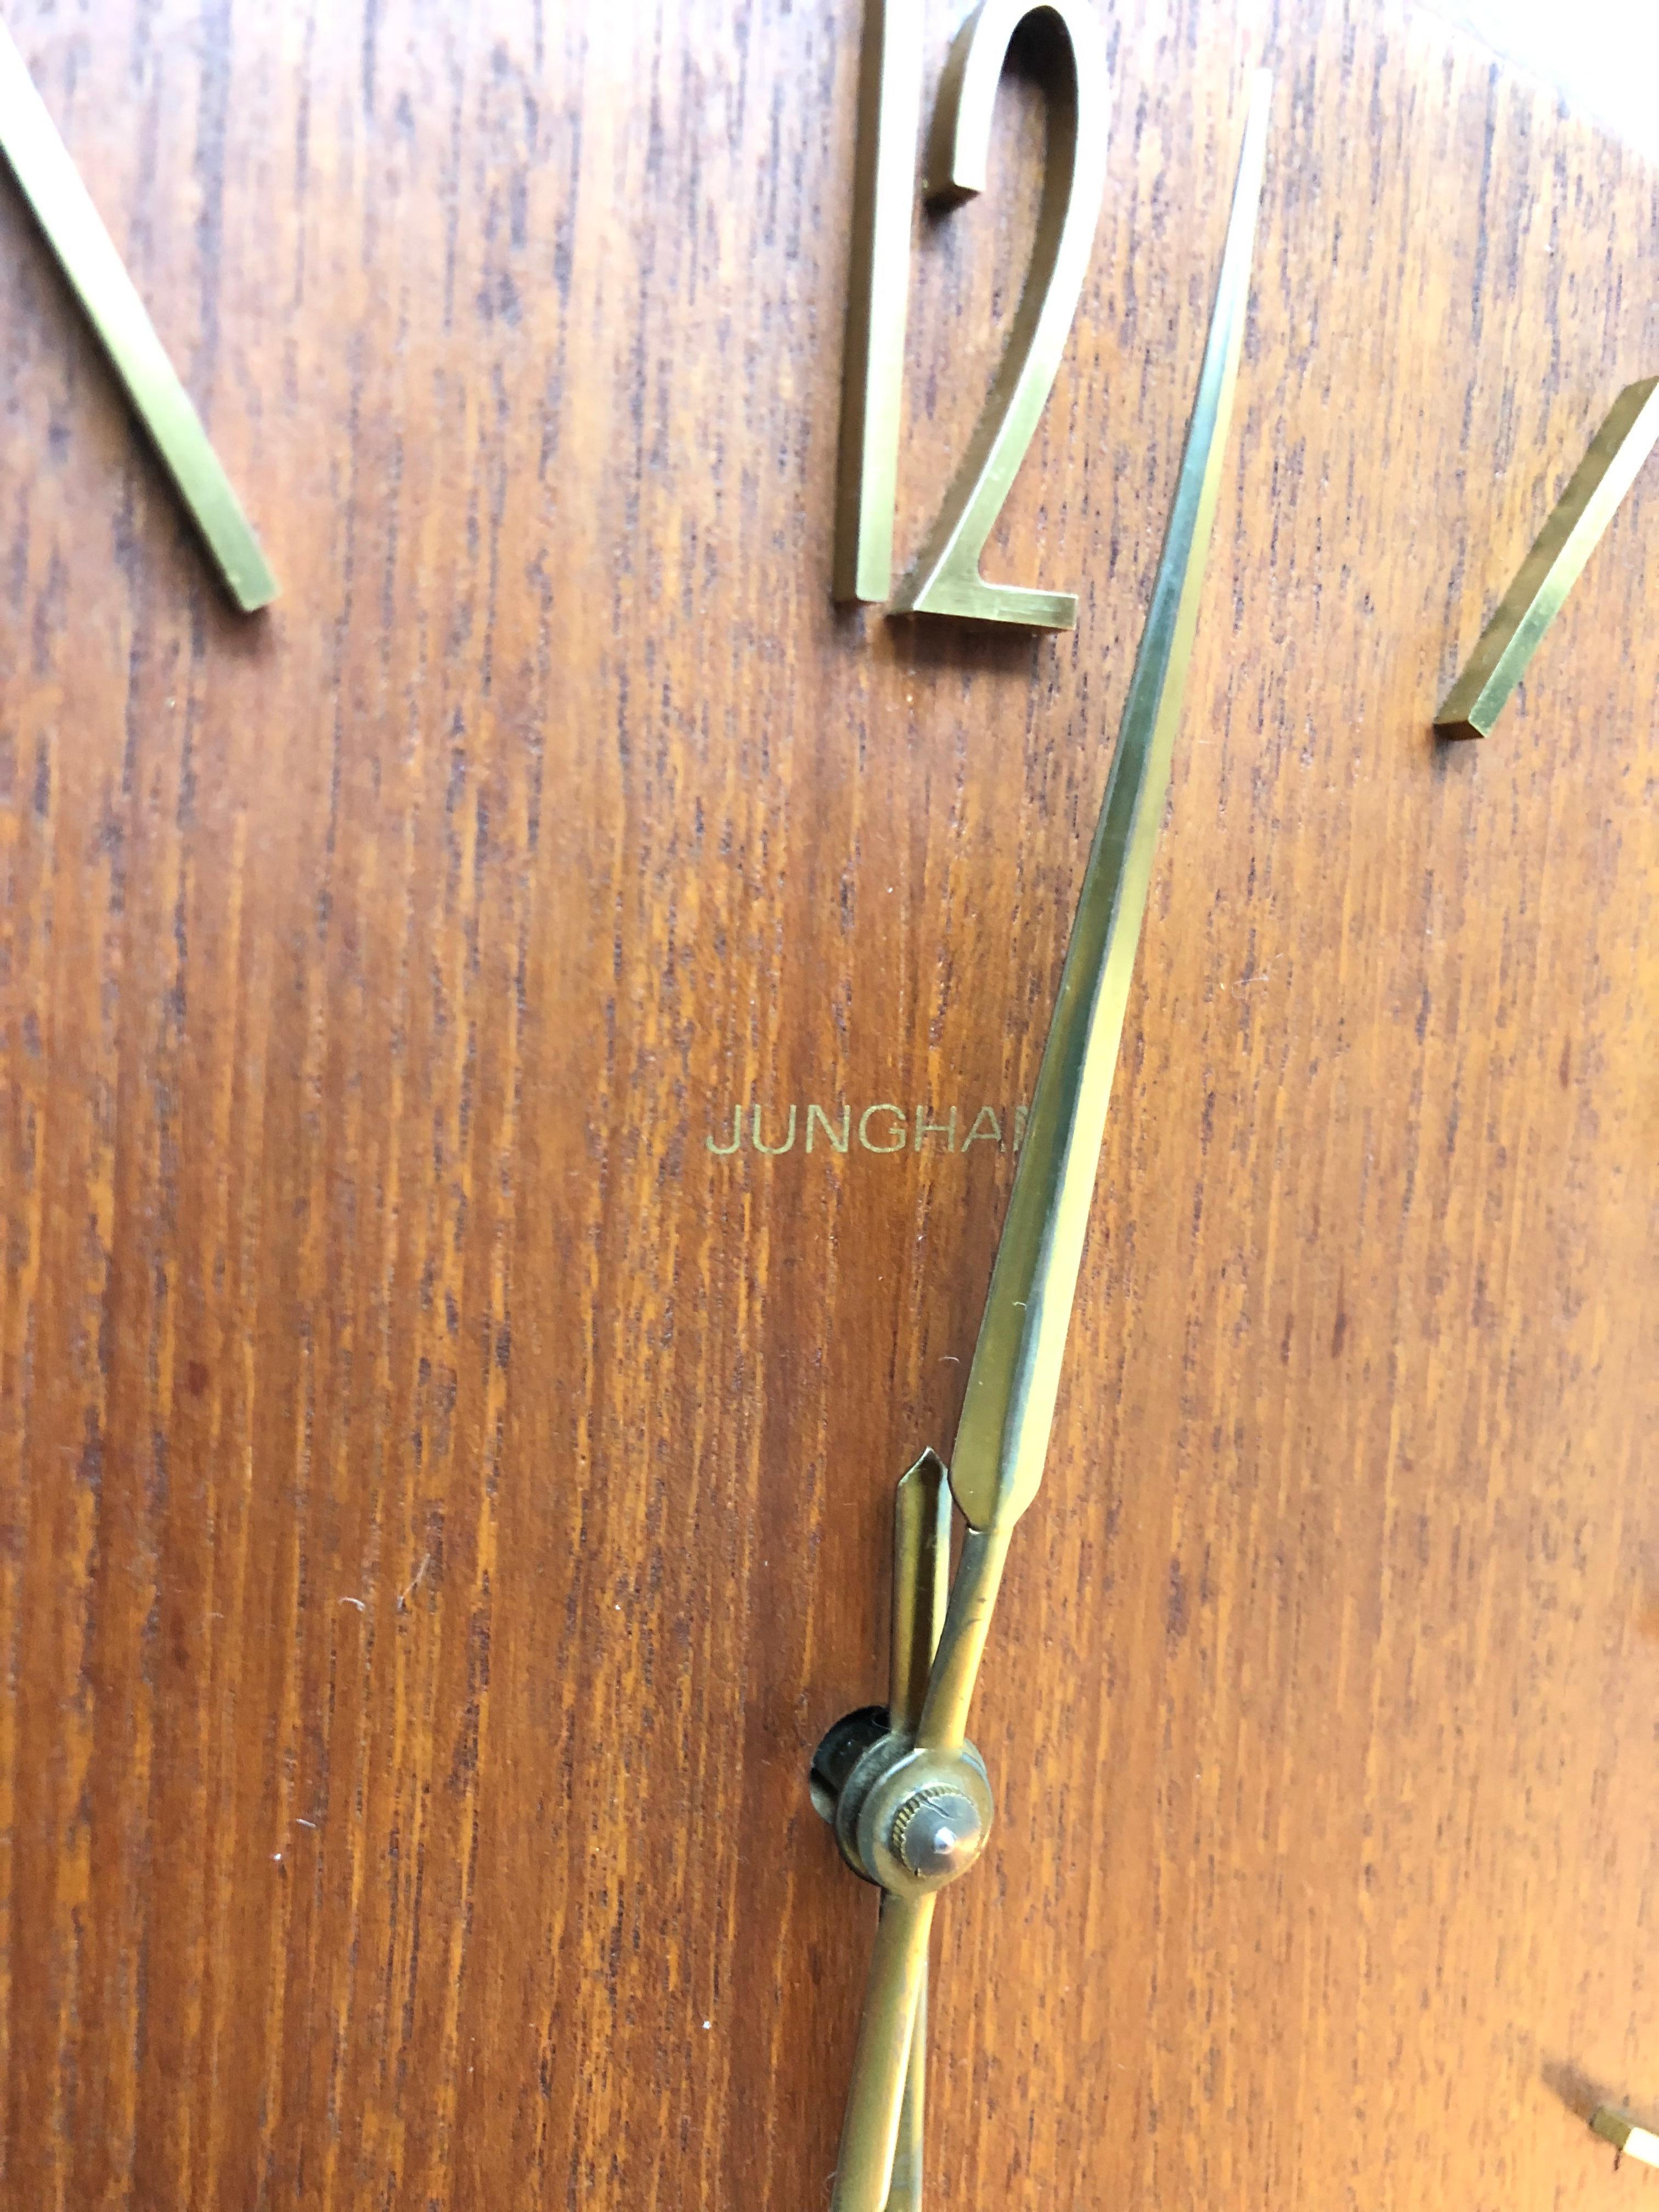 German Vintage Junghans Pendulum Wall Clock in Oak Veneer from the 1960s